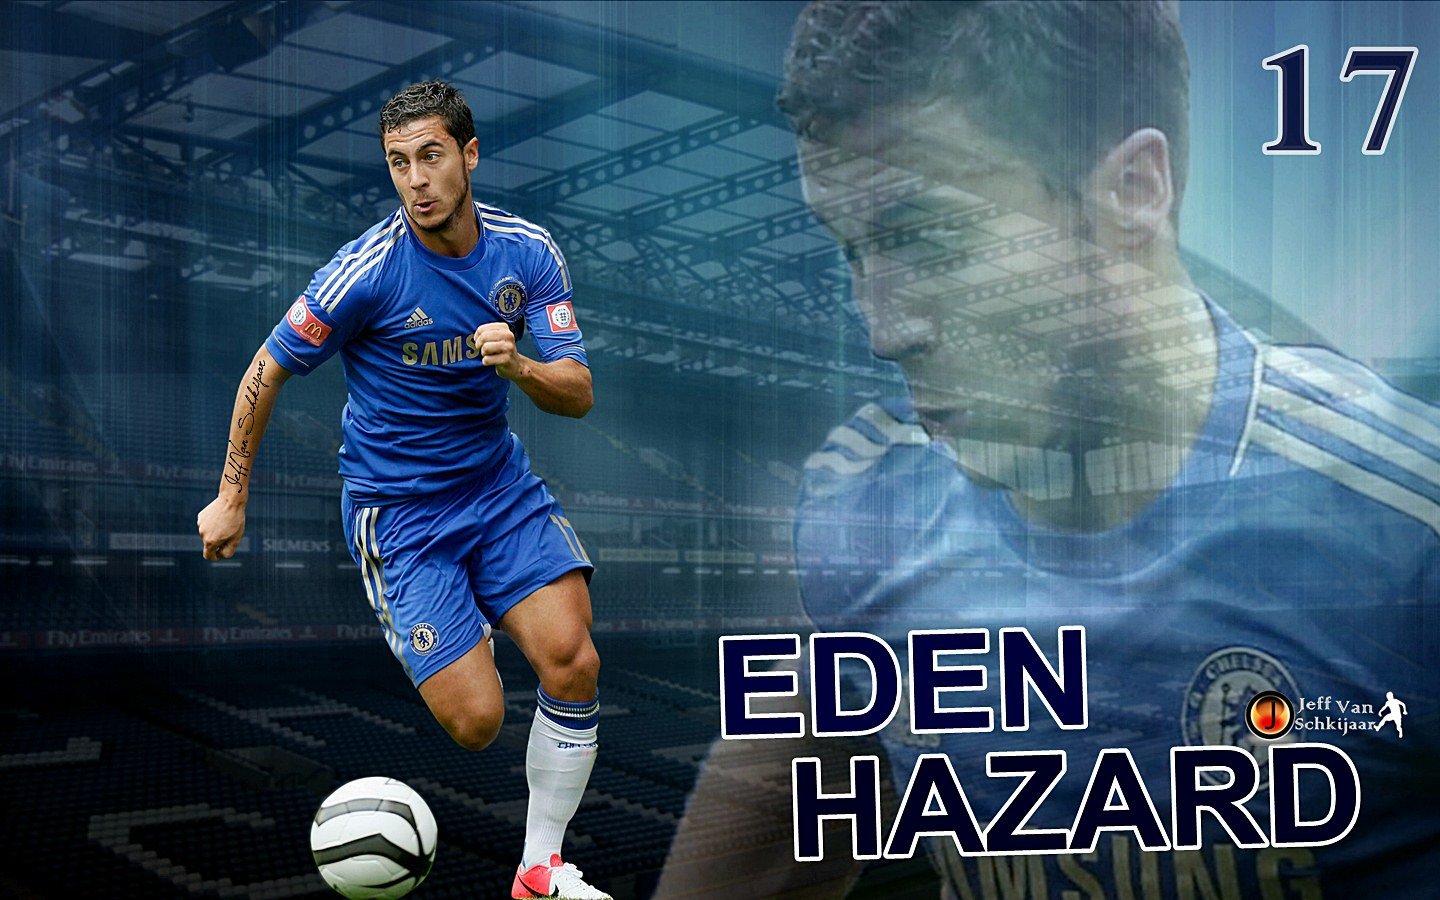 Eden Hazard Chelsea Wallpaper 2014 - HD Wallpaper 